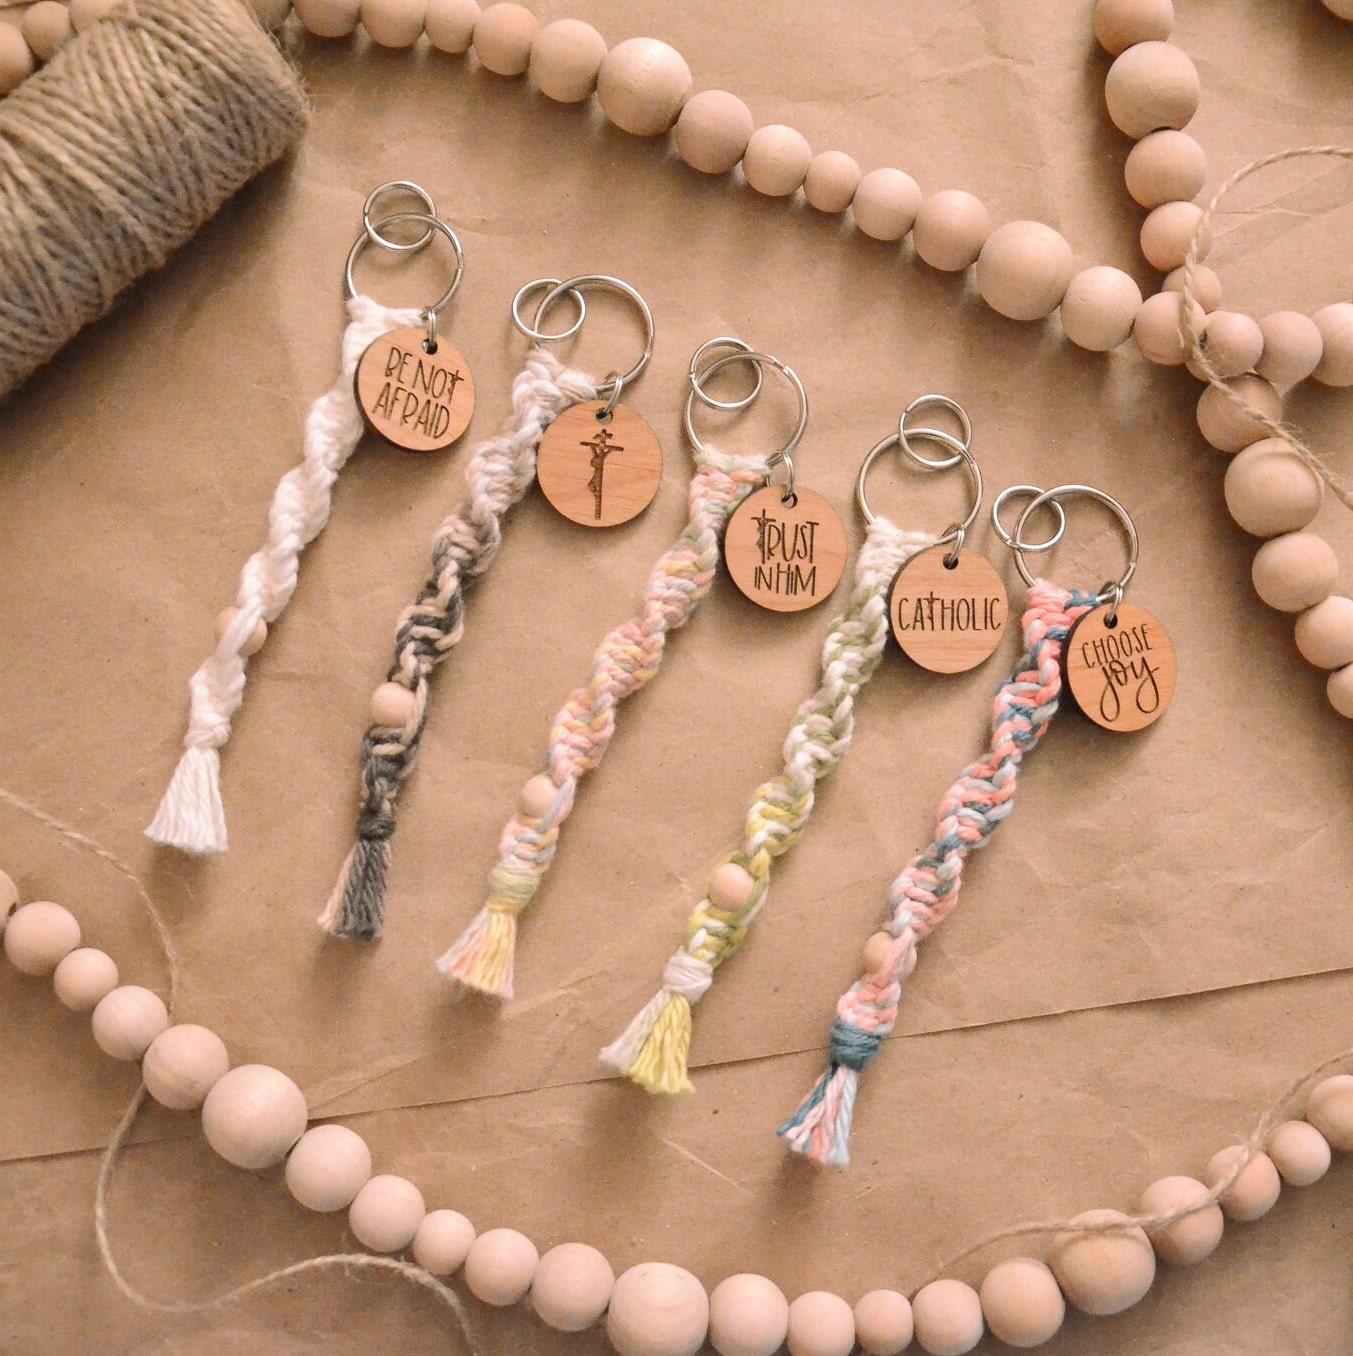 Macrame Keychain Beads, Macrame Keychain Jewelry